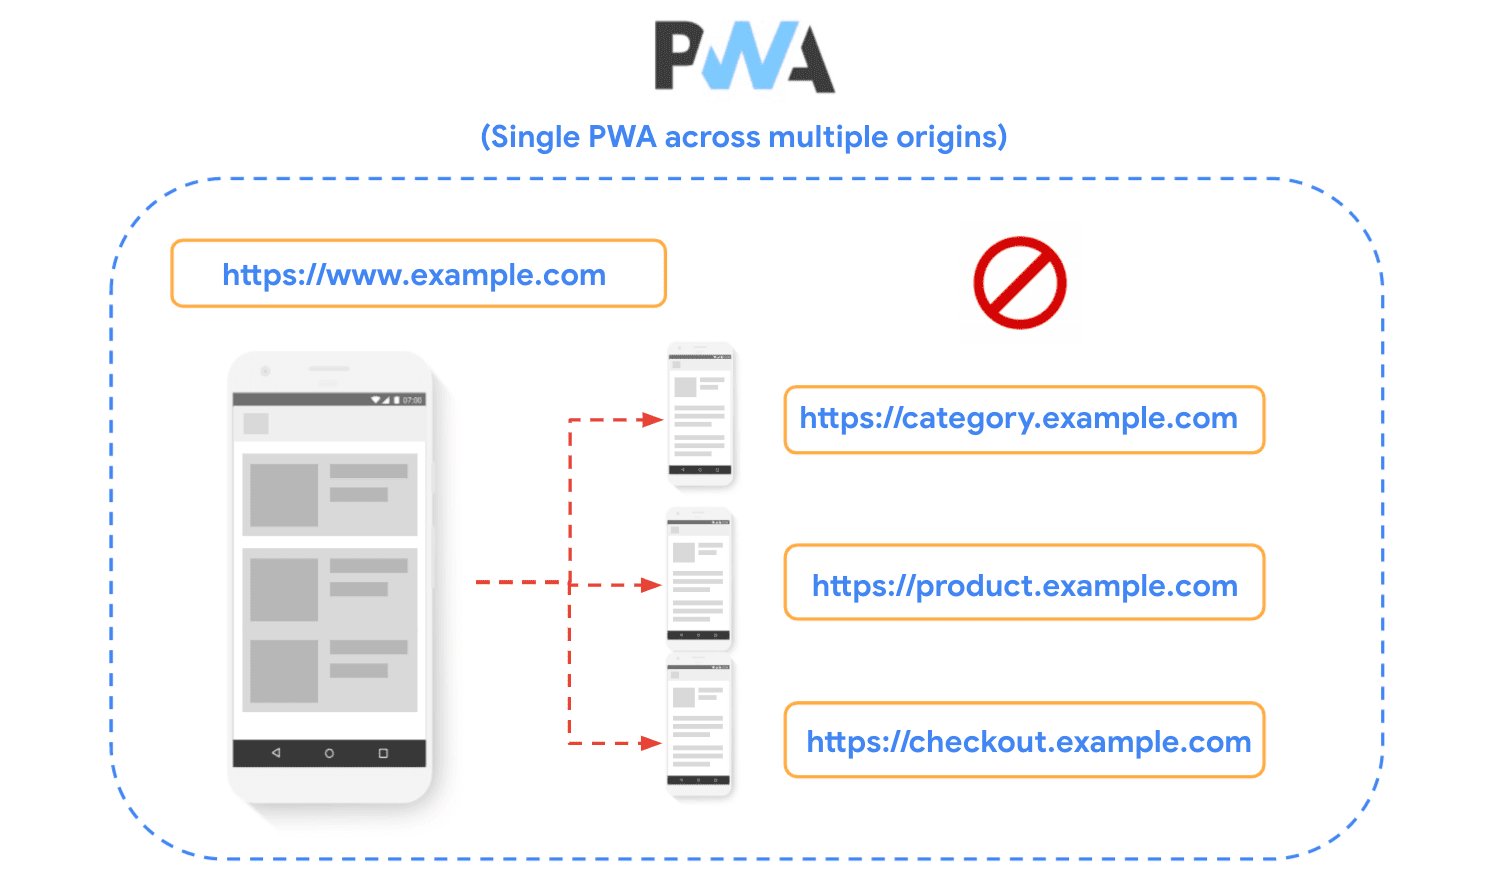 示意图：某个网站分为多个源，同时指出在构建 PWA 时不建议采用该方法。